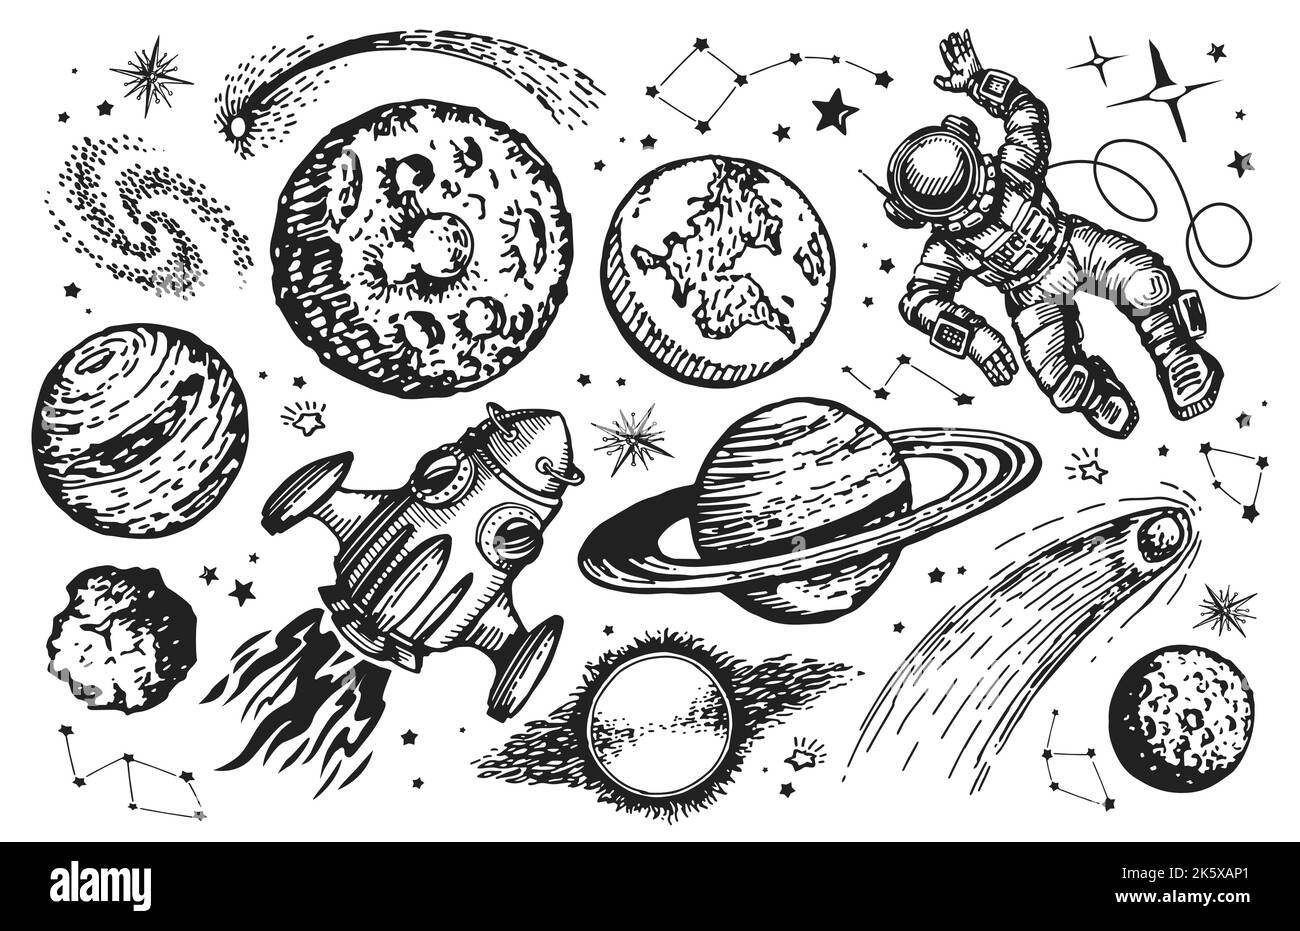 Konzept der Raumfahrt. Galaxy-Zeichensatz. Raumschiff, Astronaut, Planeten und Sterne skizzieren Vintage-Vektor-Illustration Stock Vektor